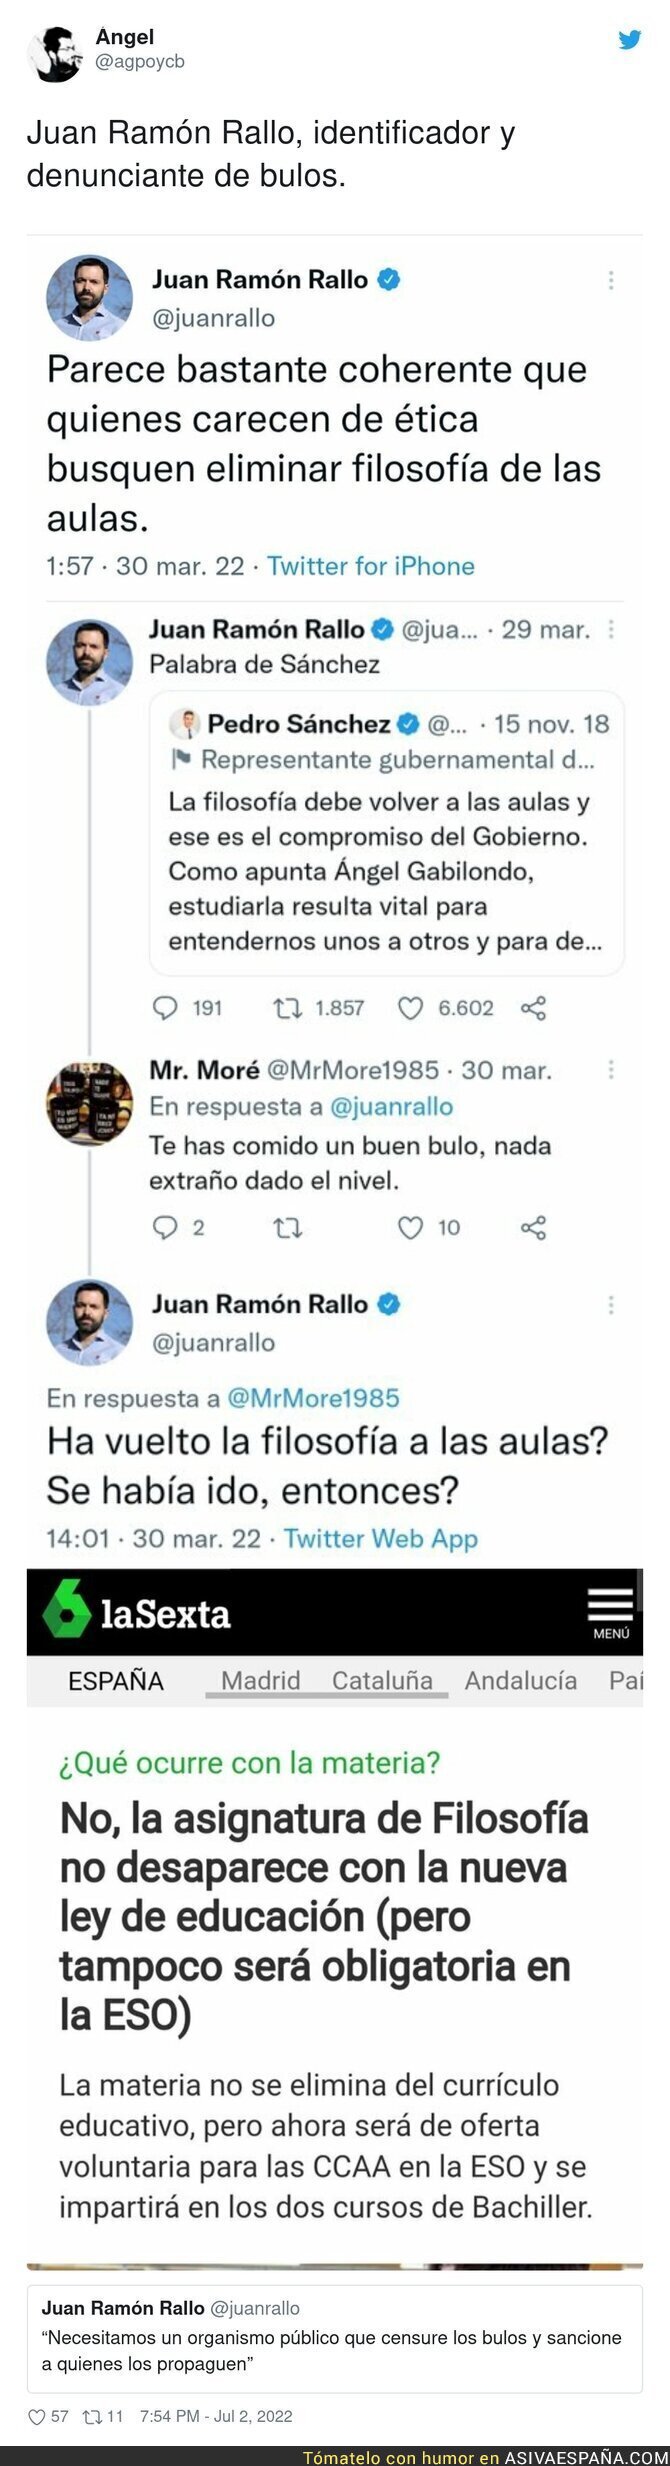 Juan Ramón Rallo mucho intentar dar ejemplo y es el primero que difunde bulos